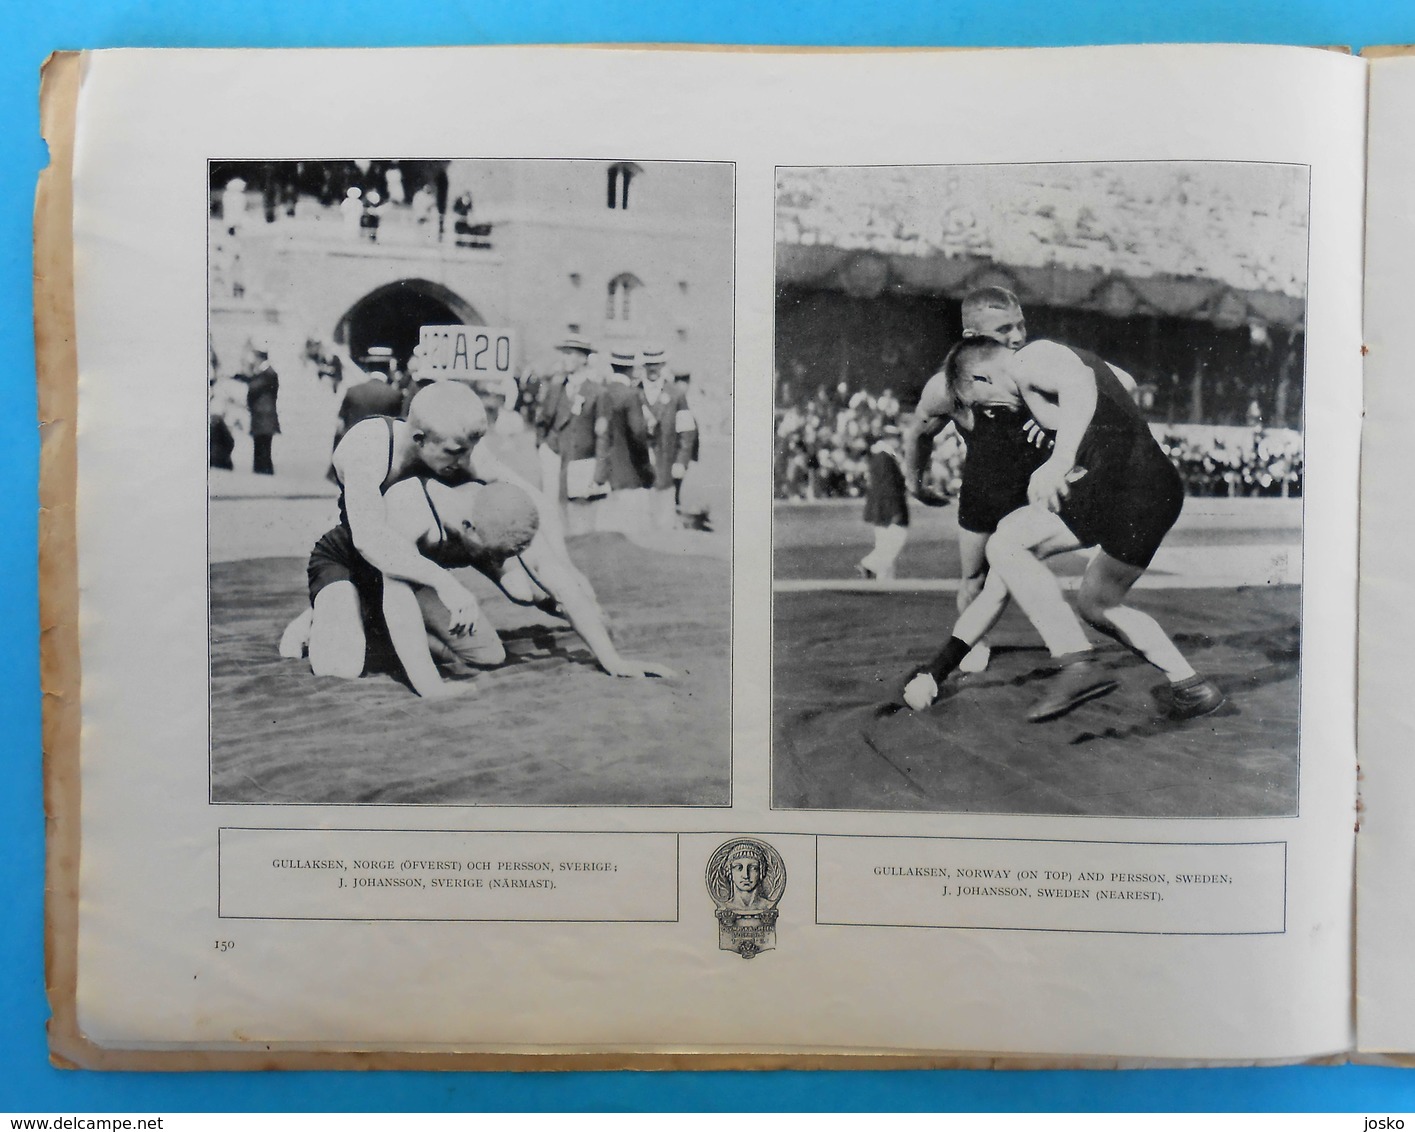 WRESTLING on OLYMPIC GAMES 1912 STOCKHOLM vintage programme/review 1912.y * lutte ringen lotta tug of war racewalking